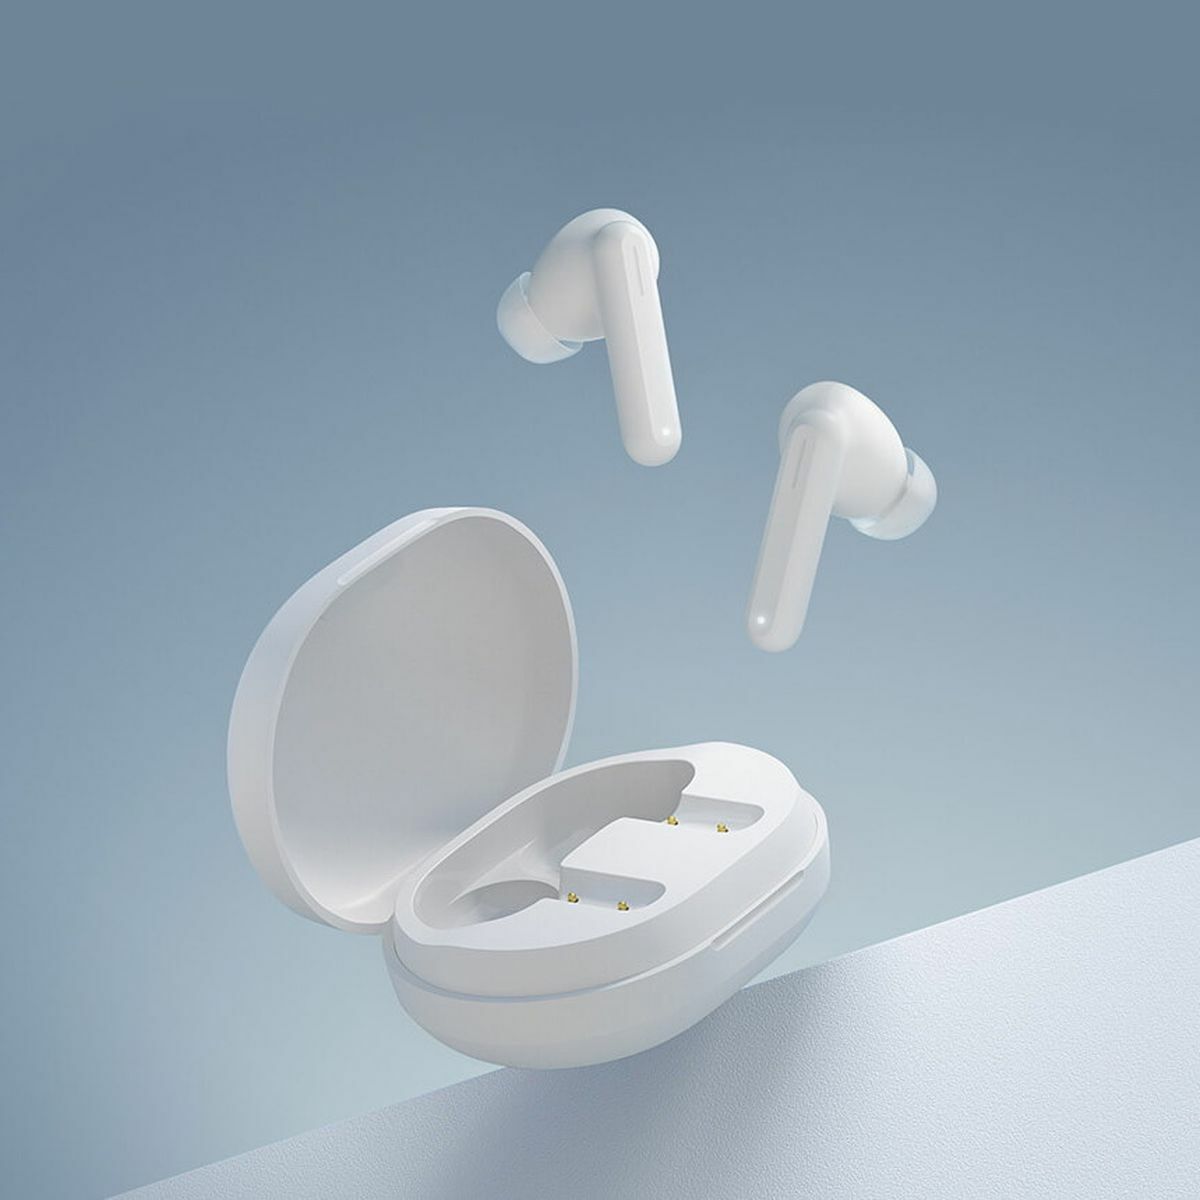 Kép 6/6 - Xiaomi Haylou GT7 Bluetooth Earbuds TWS vezeték nélküli fülhallgató, fehér EU